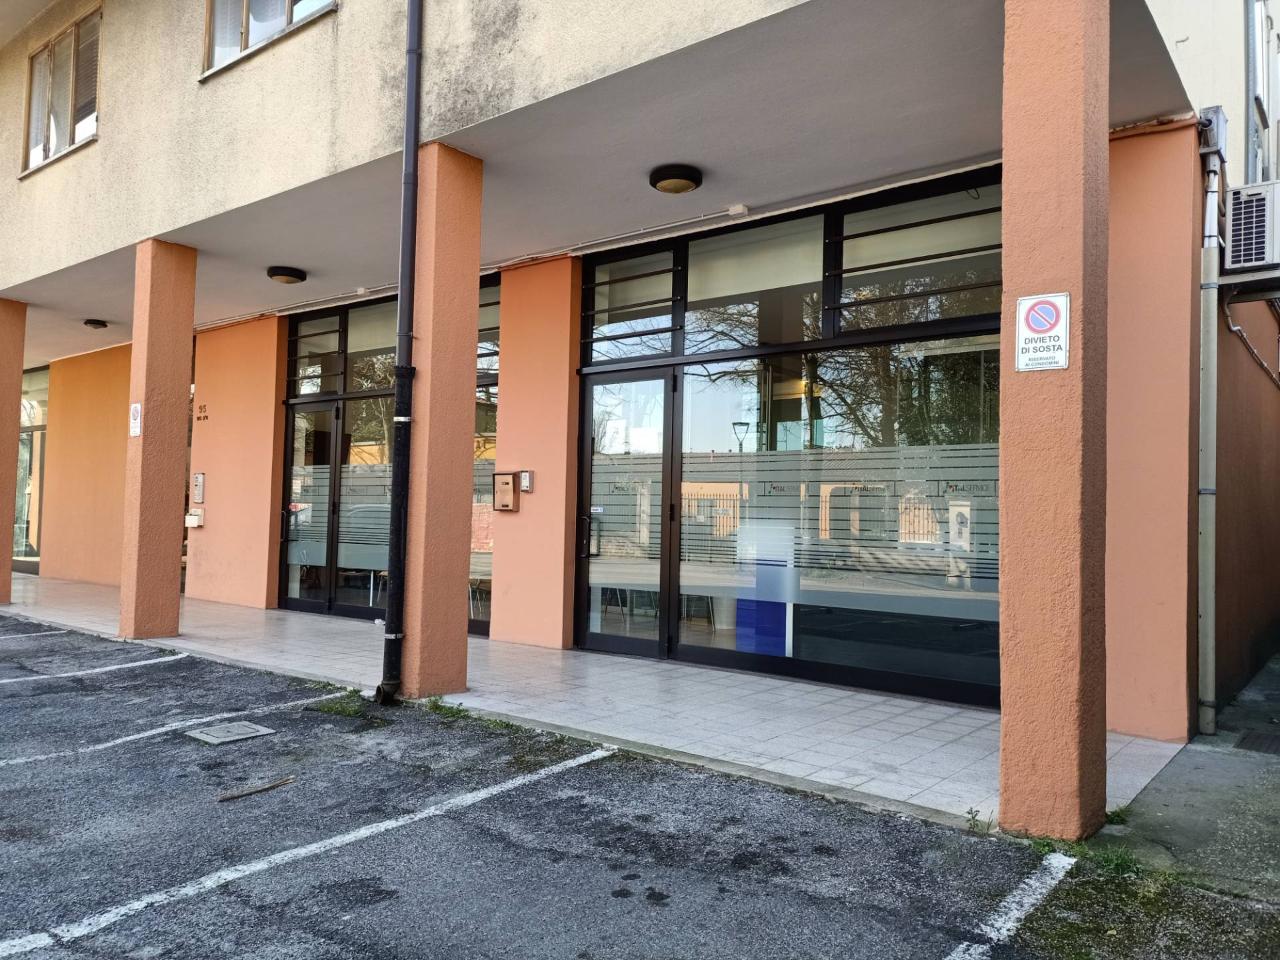 Negozio in vendita a Mogliano Veneto